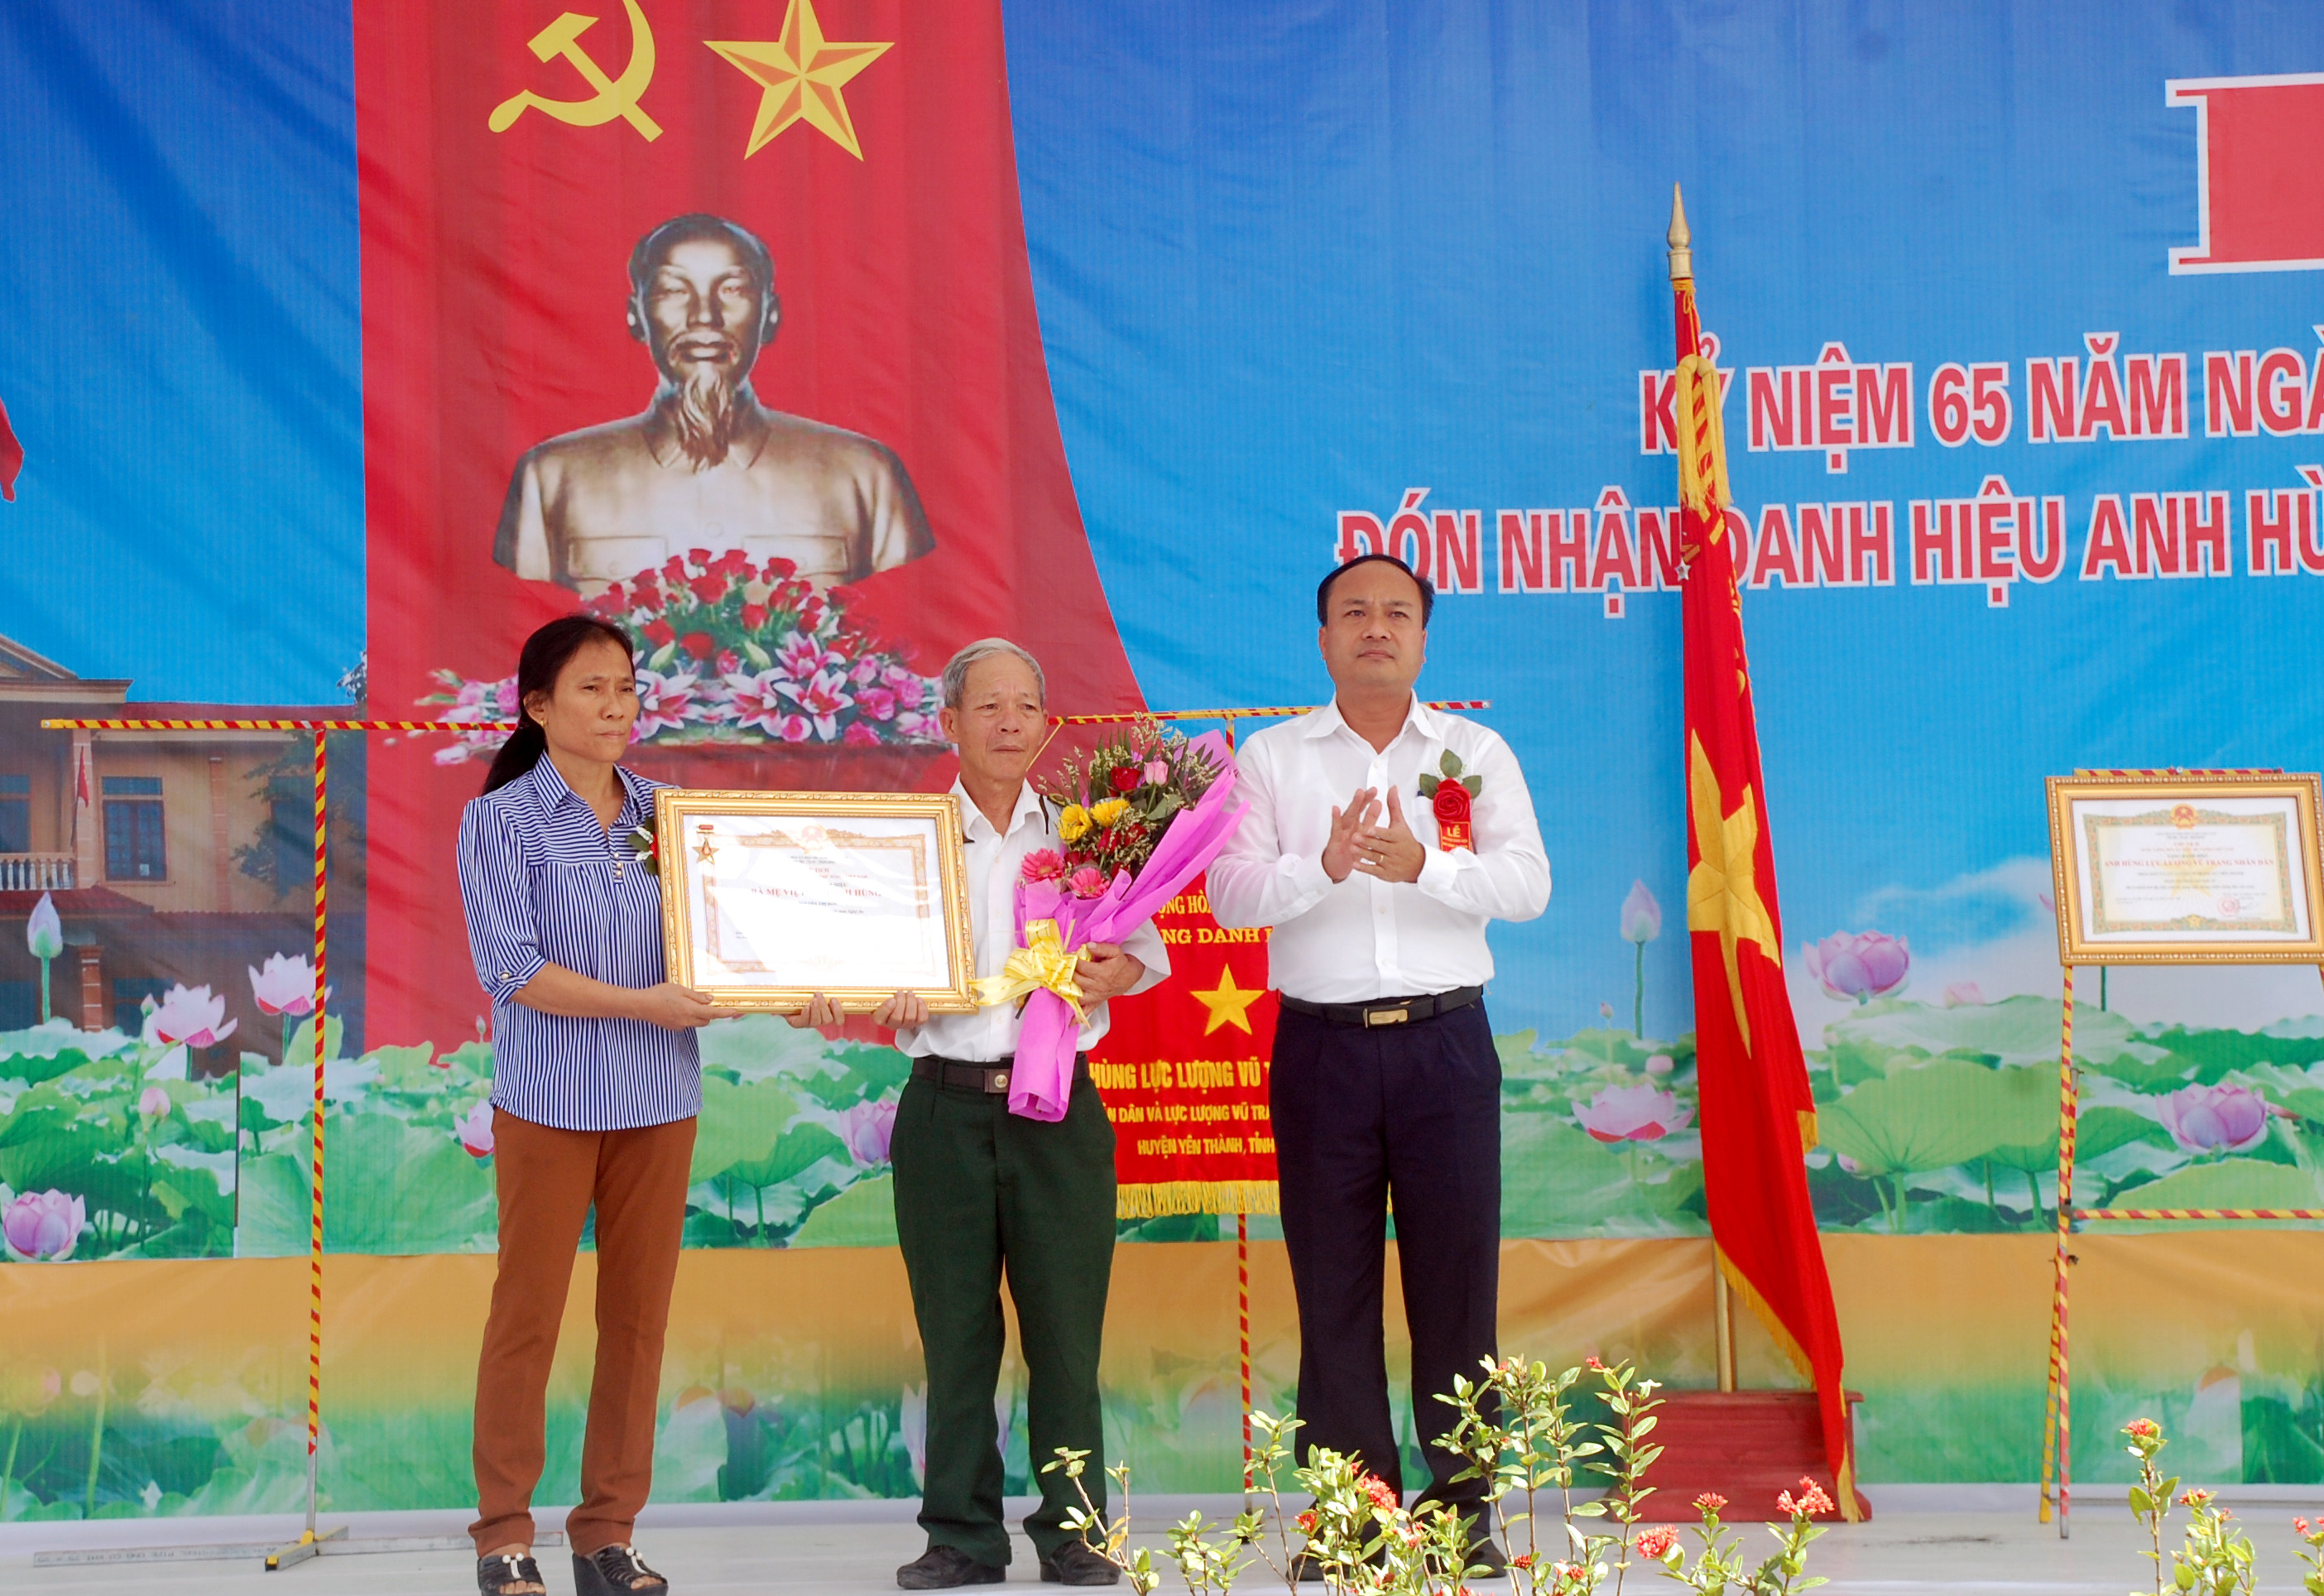 Thân nhân gia đình bà mẹ VNAH Nguyễn Thị Đởn vinh dự đón nhận truy tặng danh hiệu tại buổi lễ. Ảnh: Anh Tuấn